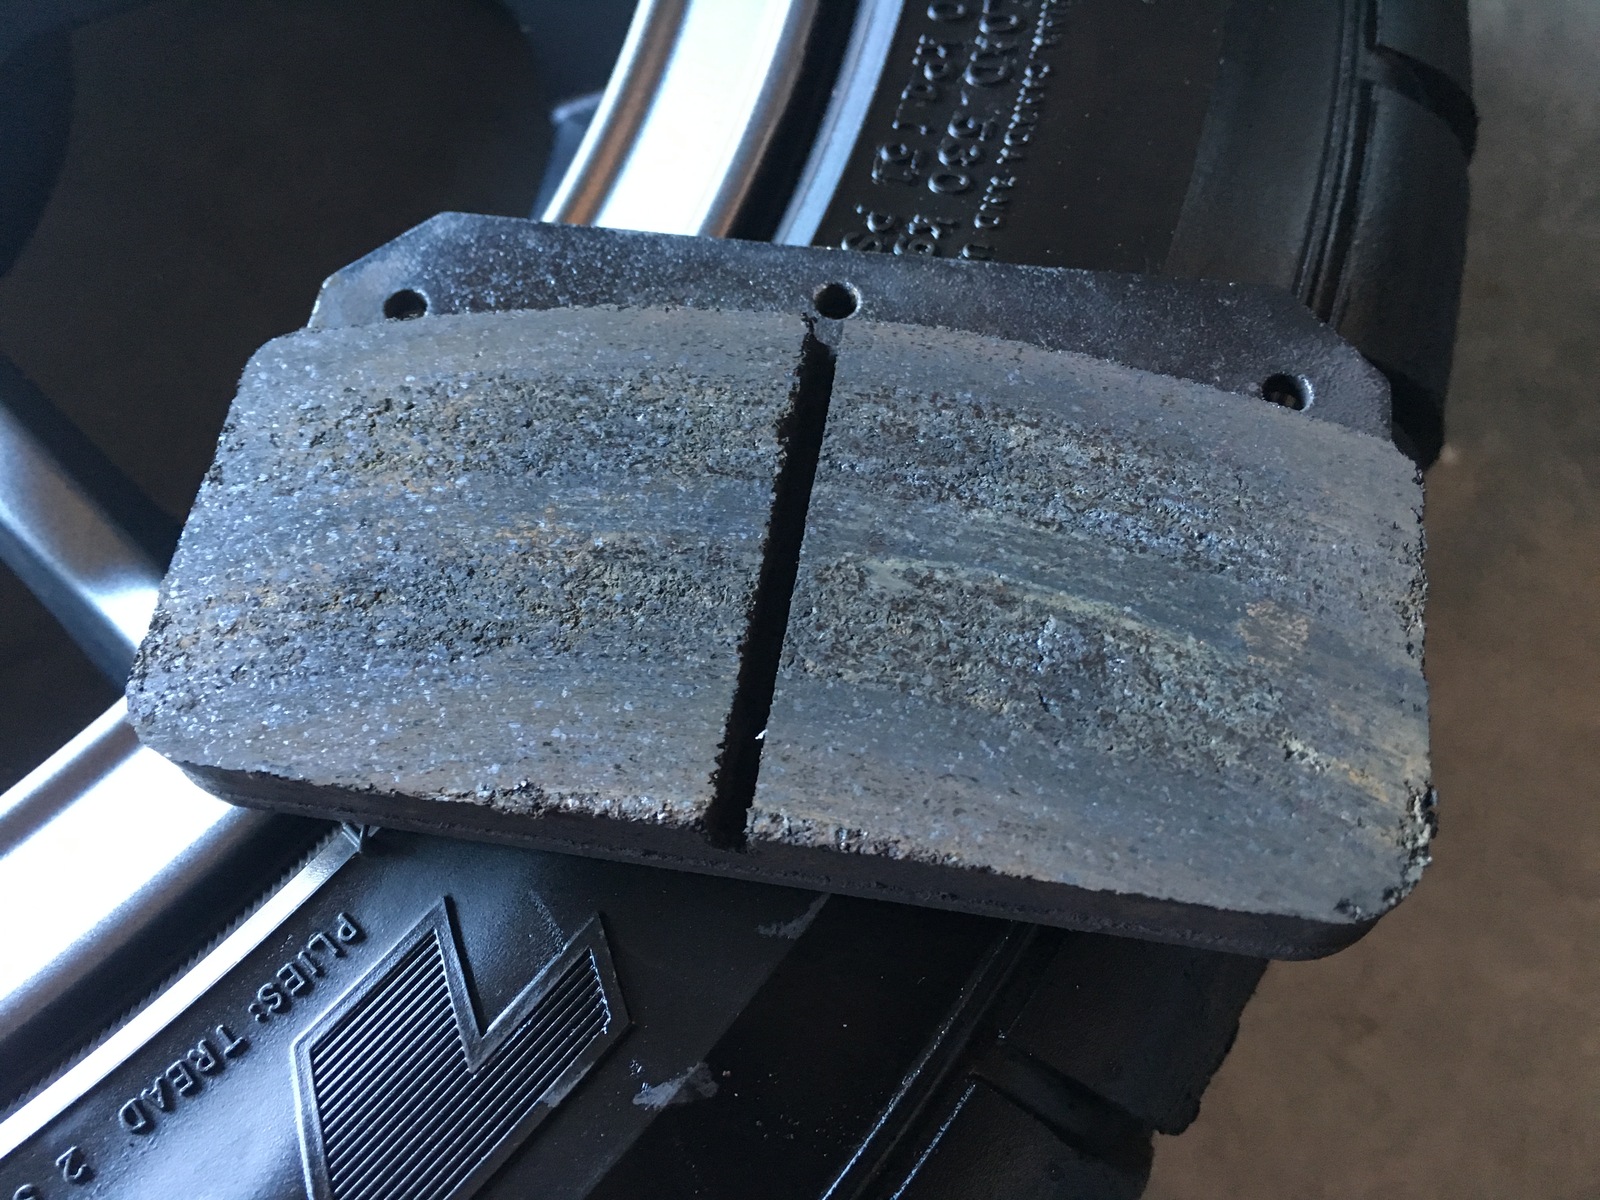 Glazed brakes fixed 